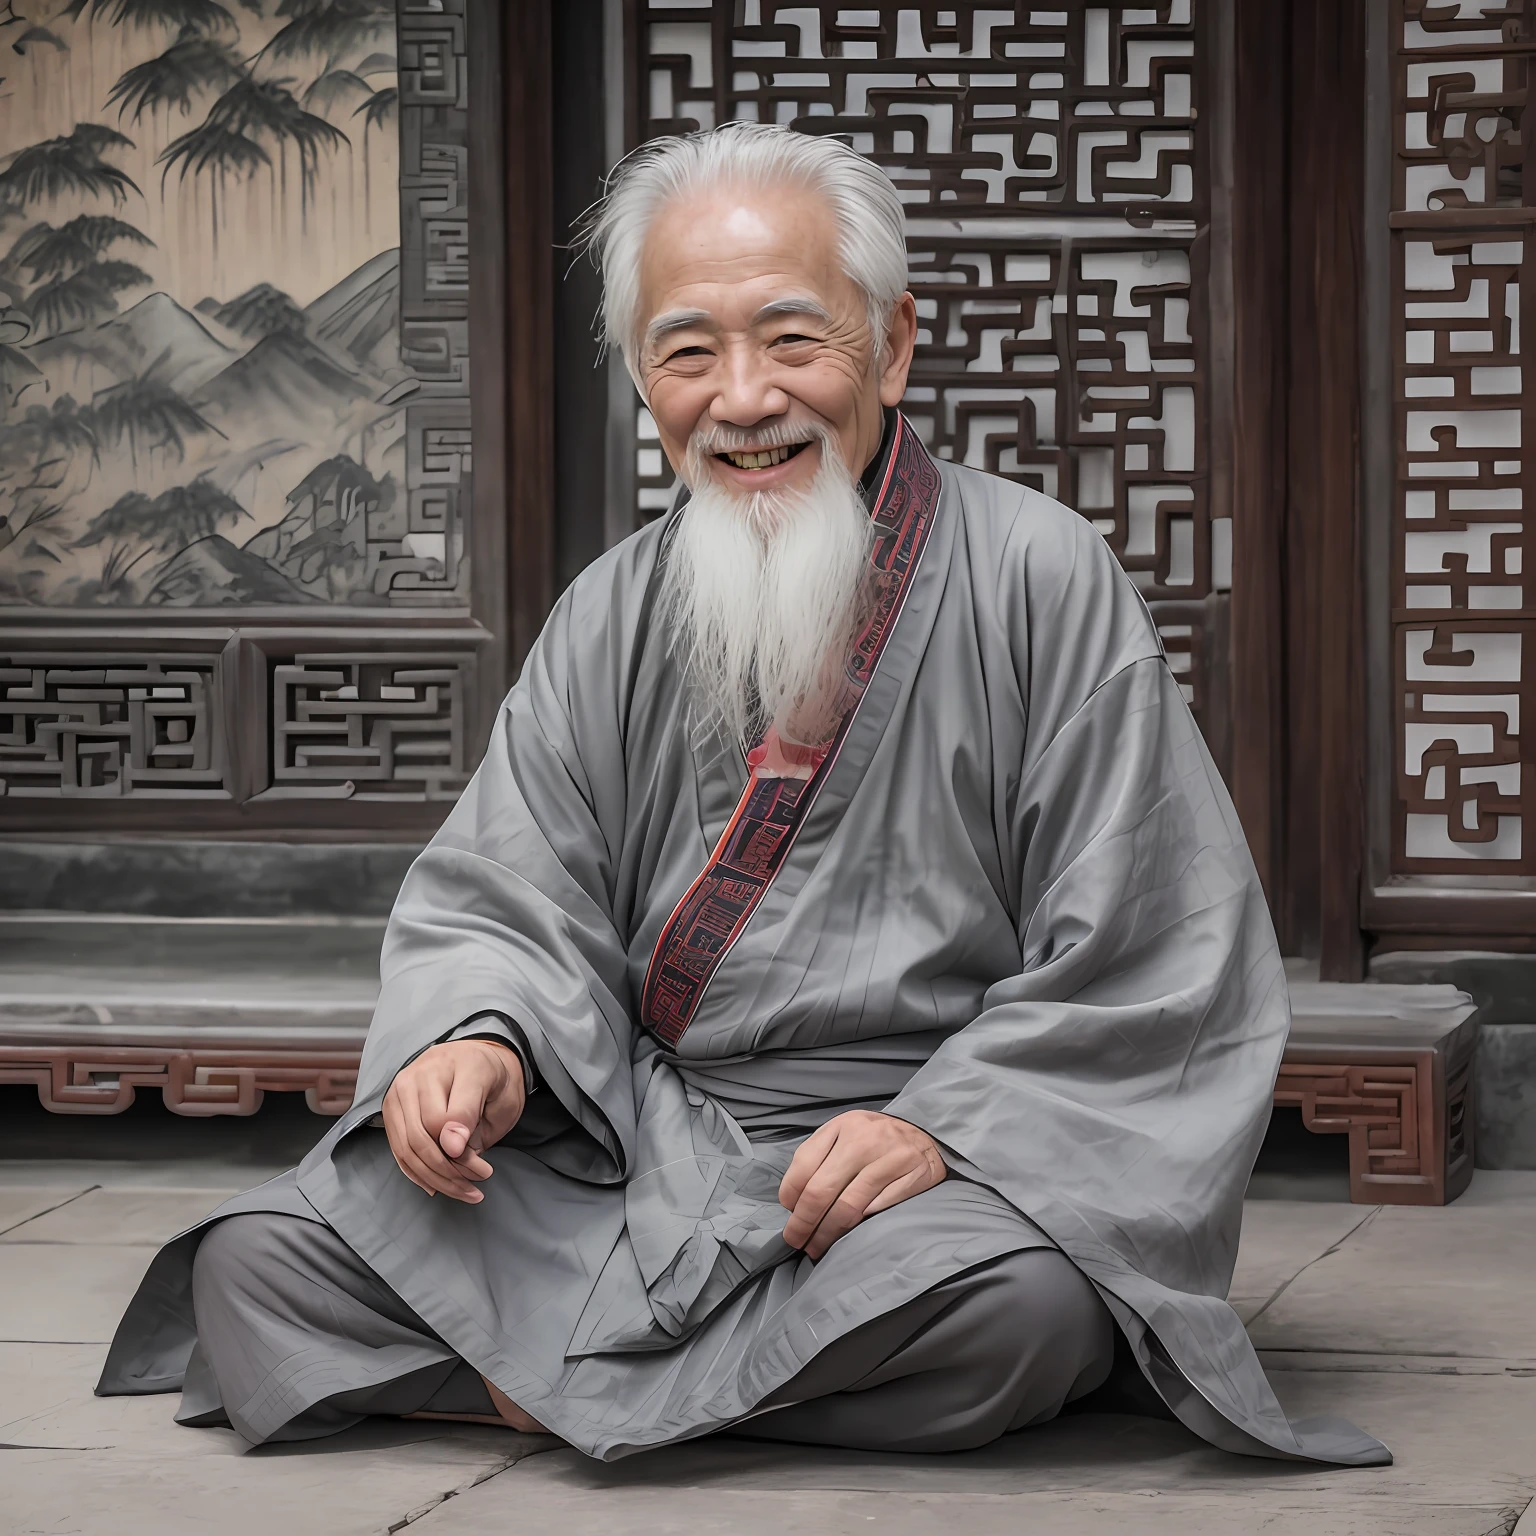 一位白发老人, 身着灰色中国古装, 微笑, 80岁,镜头中间,小白胡子,古老的,
在室内, 中国道教寺庙, 古老的 chinese temple,盘腿而坐,古老的 Chinese architecture,
中景拍摄, 最好的质量,拍照,